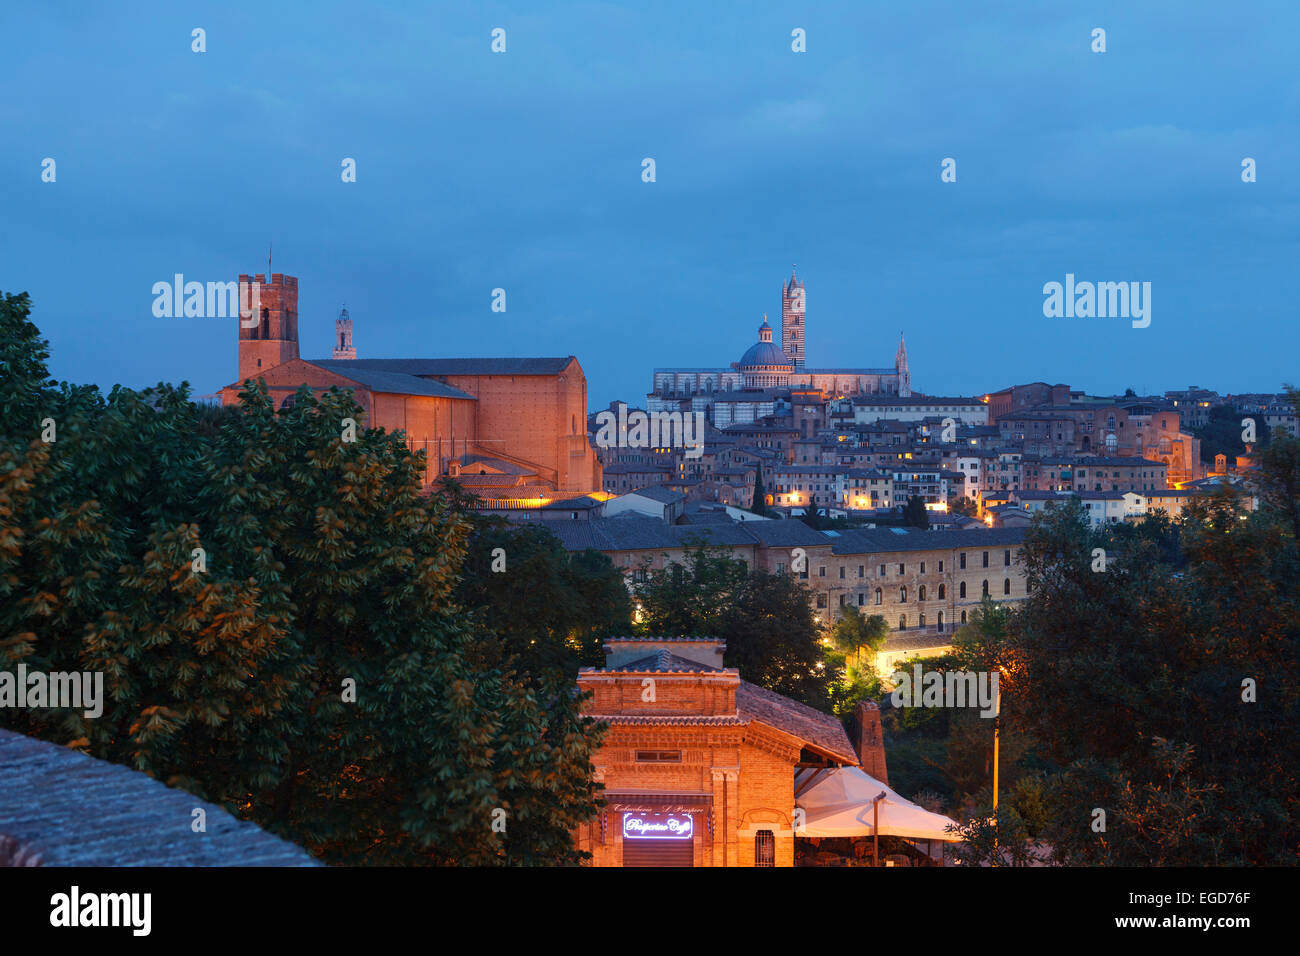 Vue urbaine avec basilique San Domenico et Duomo cathédrale Santa Maria la nuit, Sienne, UNESCO World Heritage Site, Toscane, Italie, Europe Banque D'Images